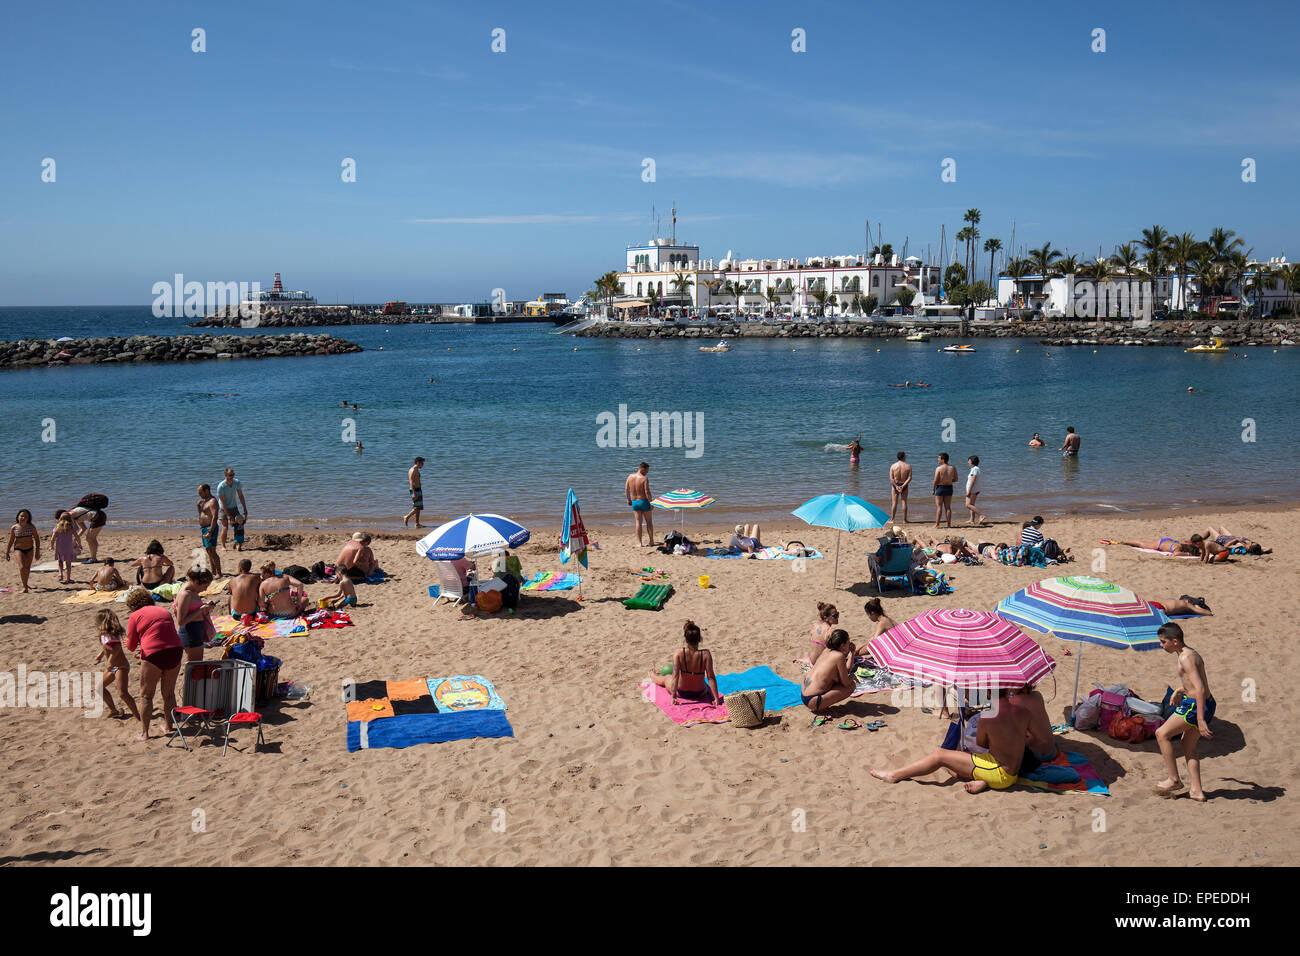 La vida de playa, Puerto de Mogan, Gran Canaria, Islas Canarias, España Foto de stock